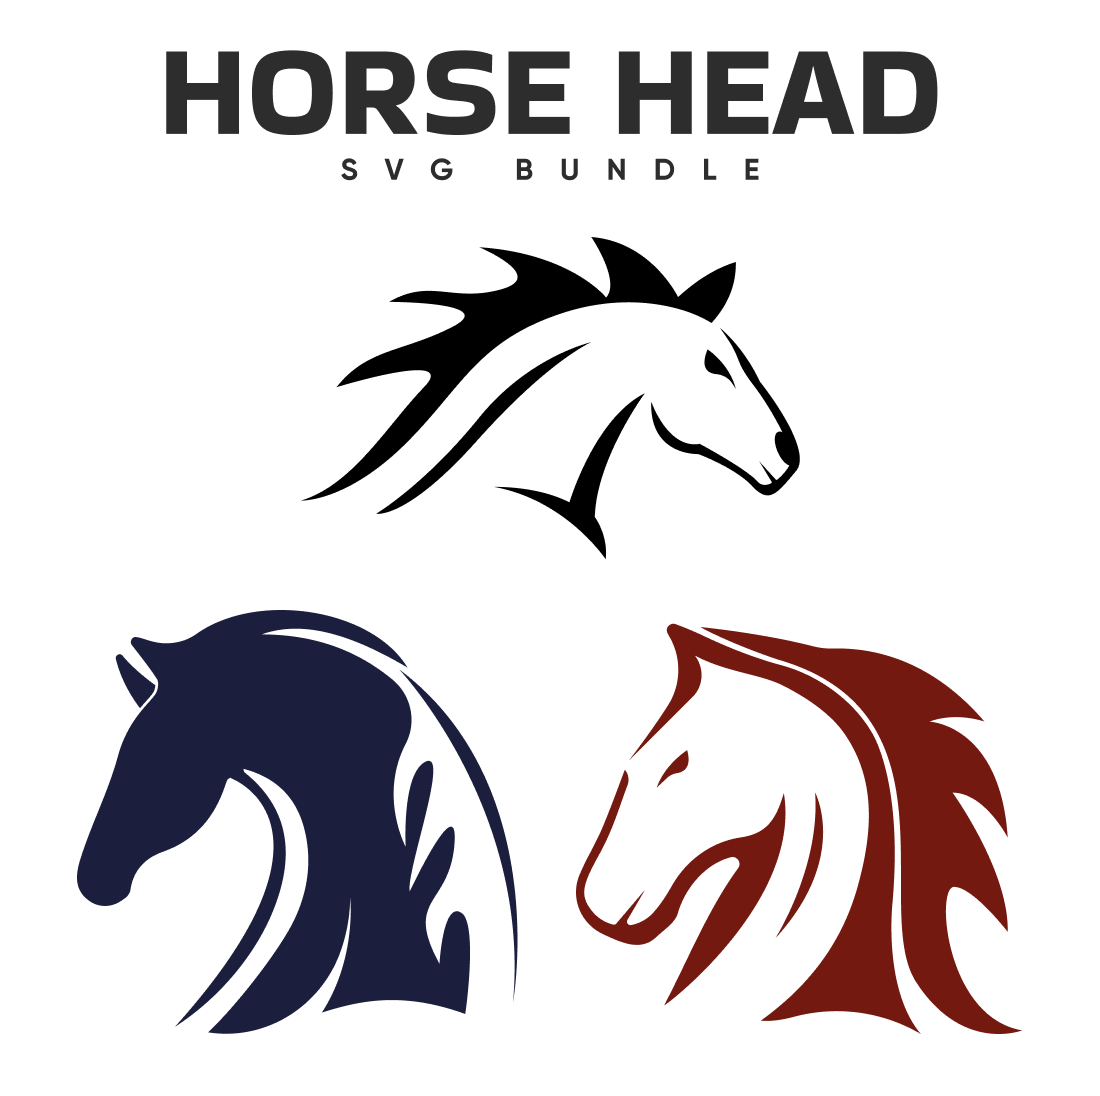 Preview horse head svg bundle.